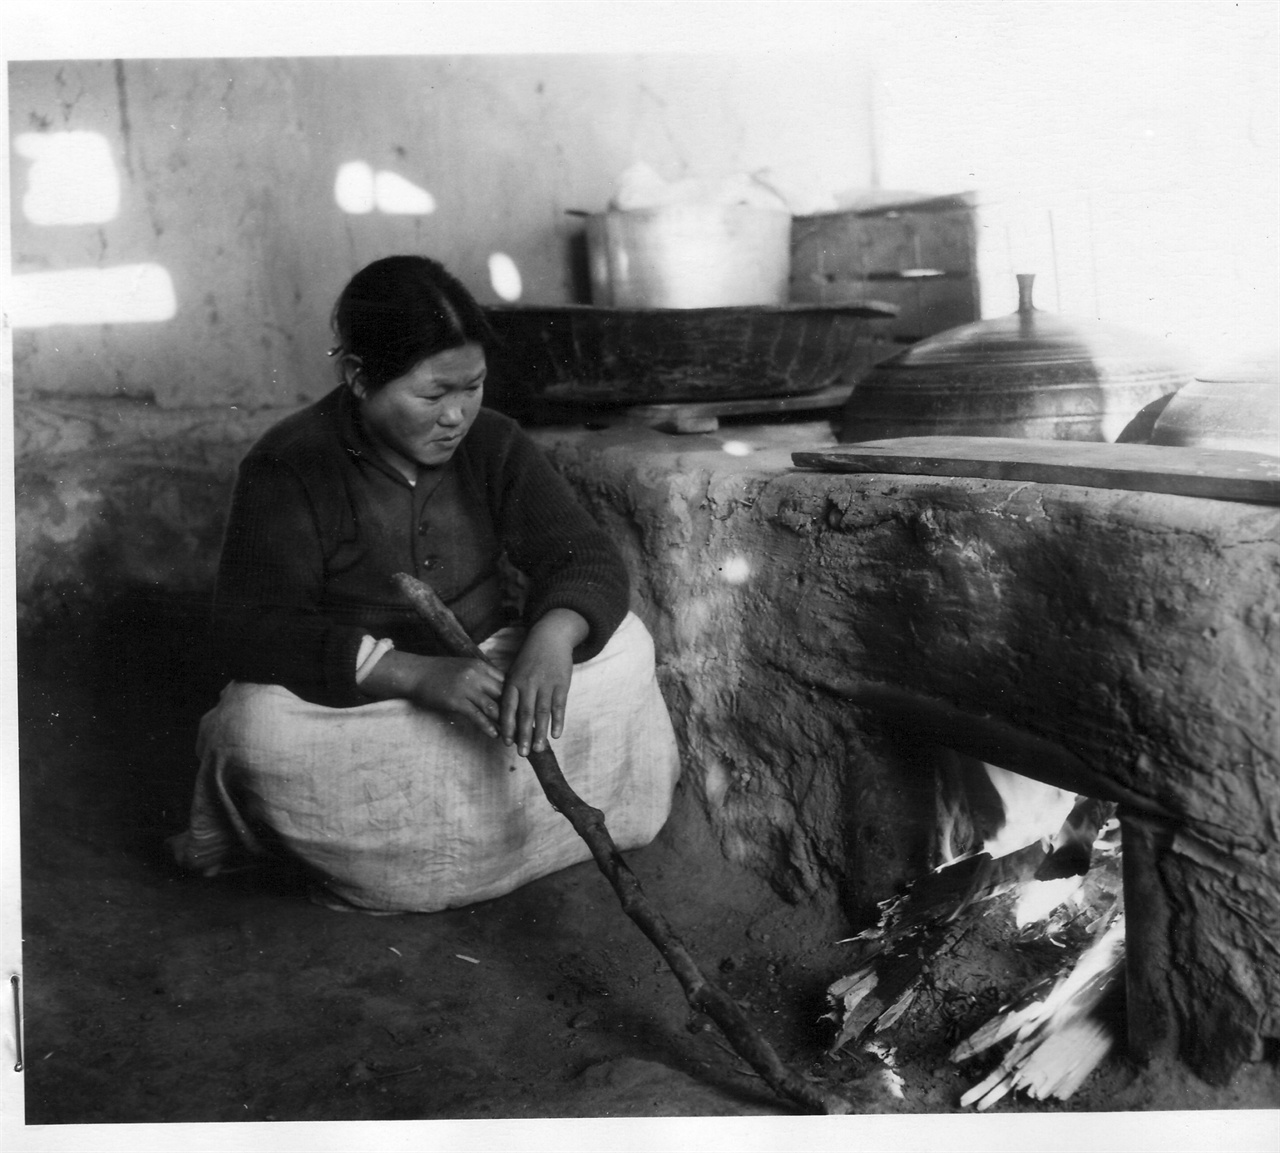 1952. 11. 18. 아낙네가 시골집에서 저녁밥을 짓고자 아궁이에 장작불을 때고 있다.